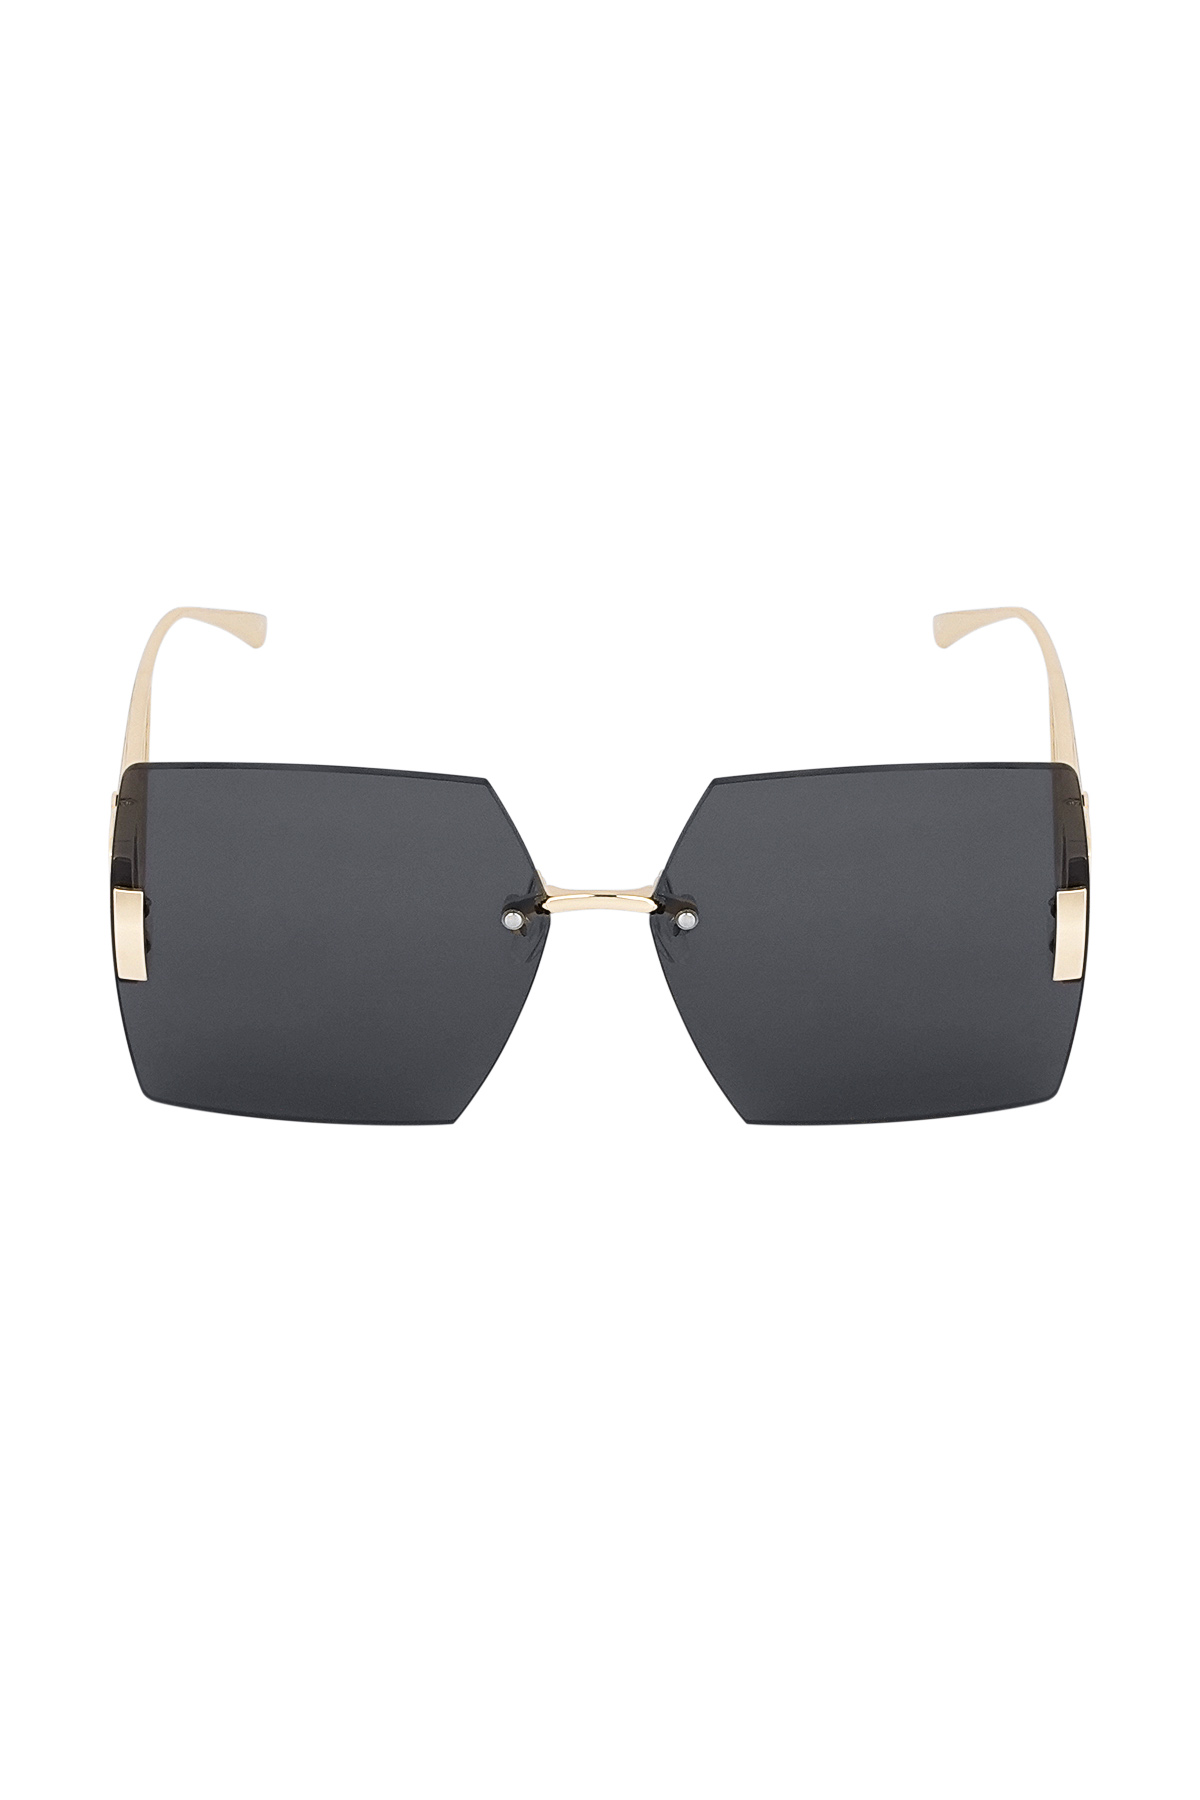 Rimless square sunglasses - gray/gold Picture2